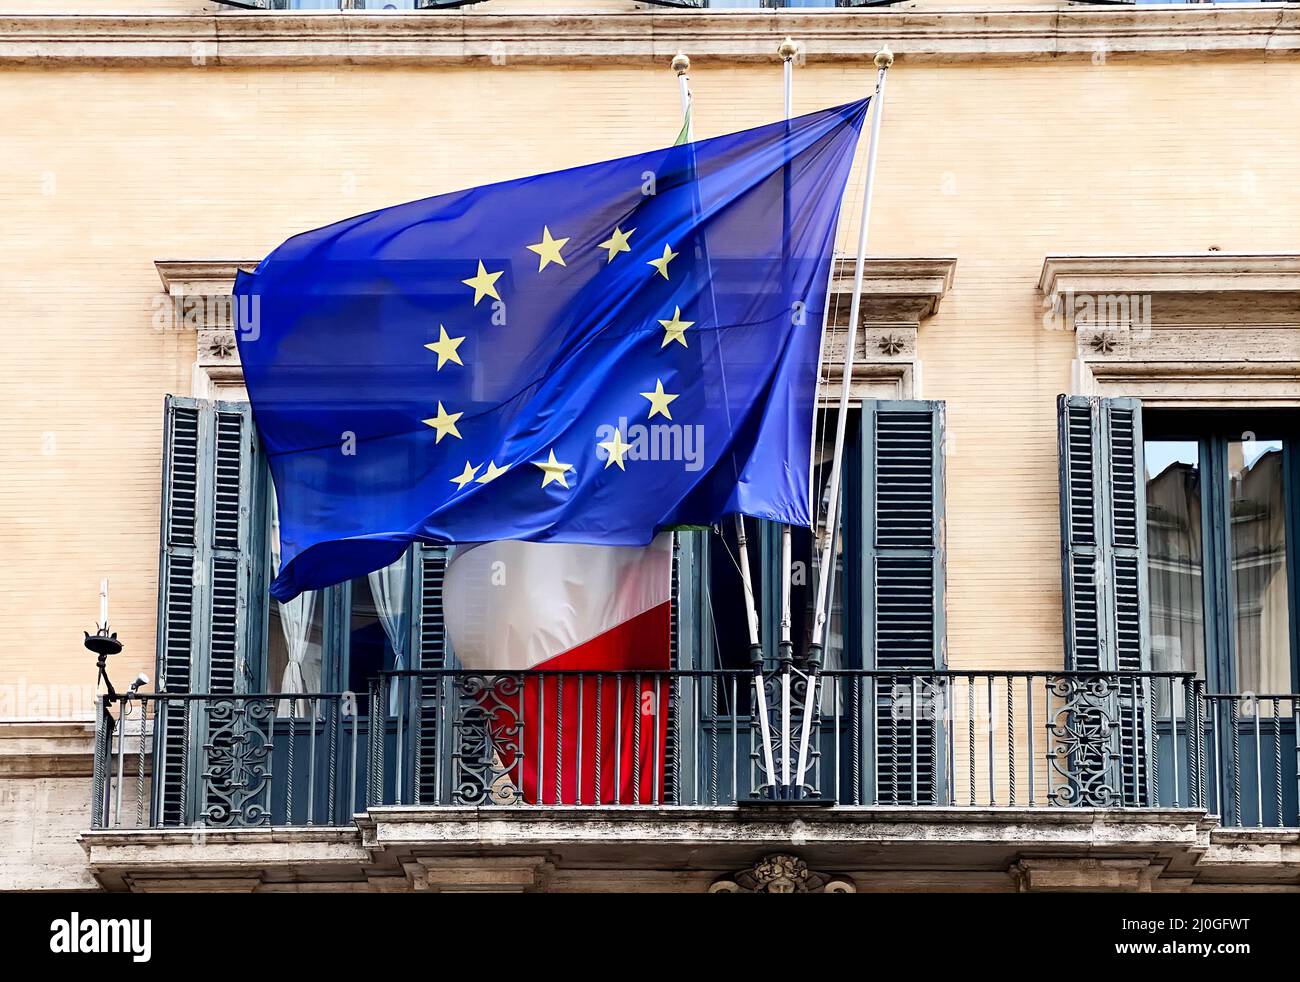 Le drapeau de la Communauté européenne survolant le drapeau italien sur le balcon d'un bâtiment public Banque D'Images